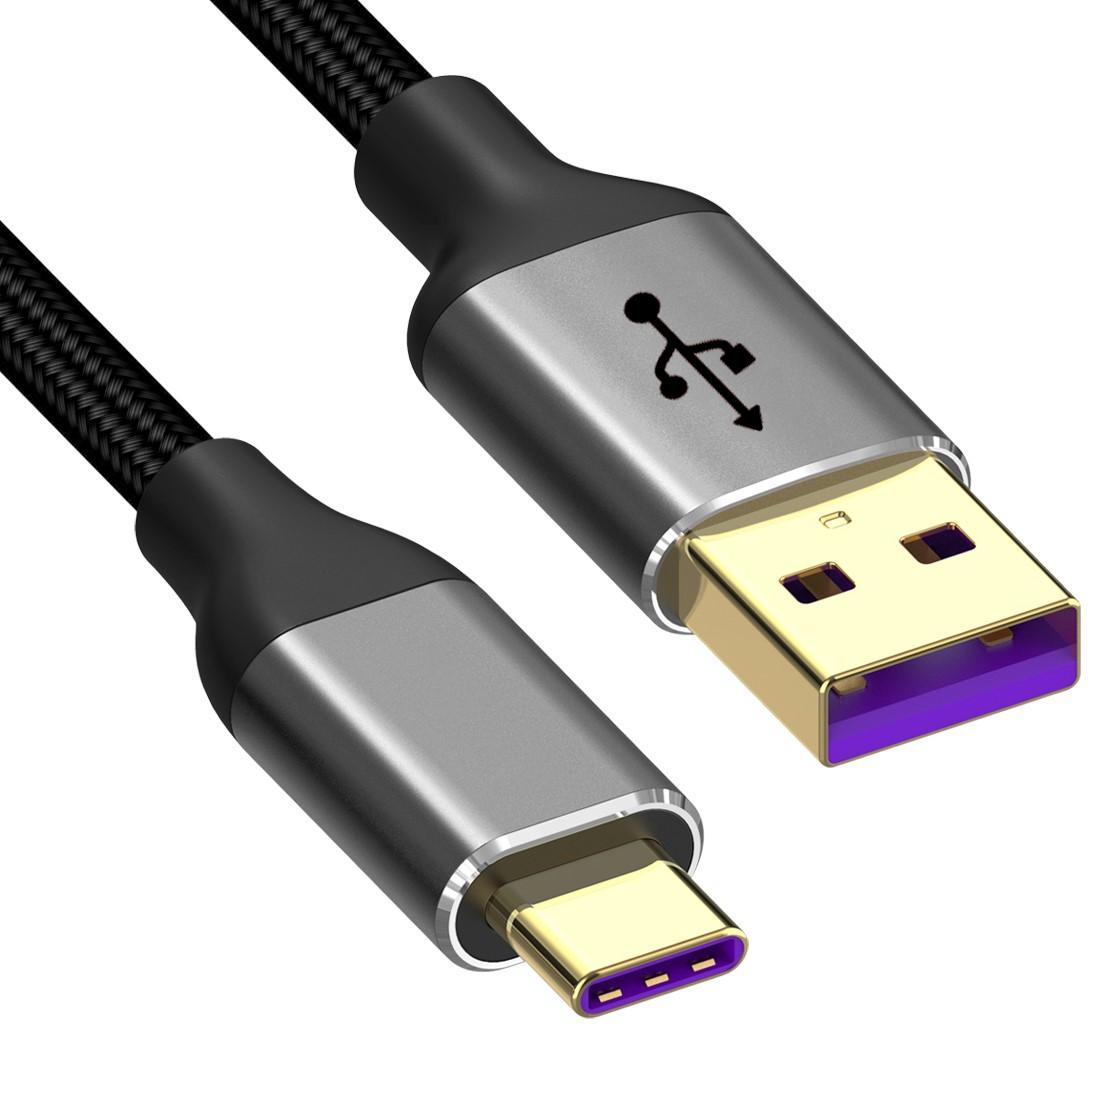 IPad USB lader - Allteq